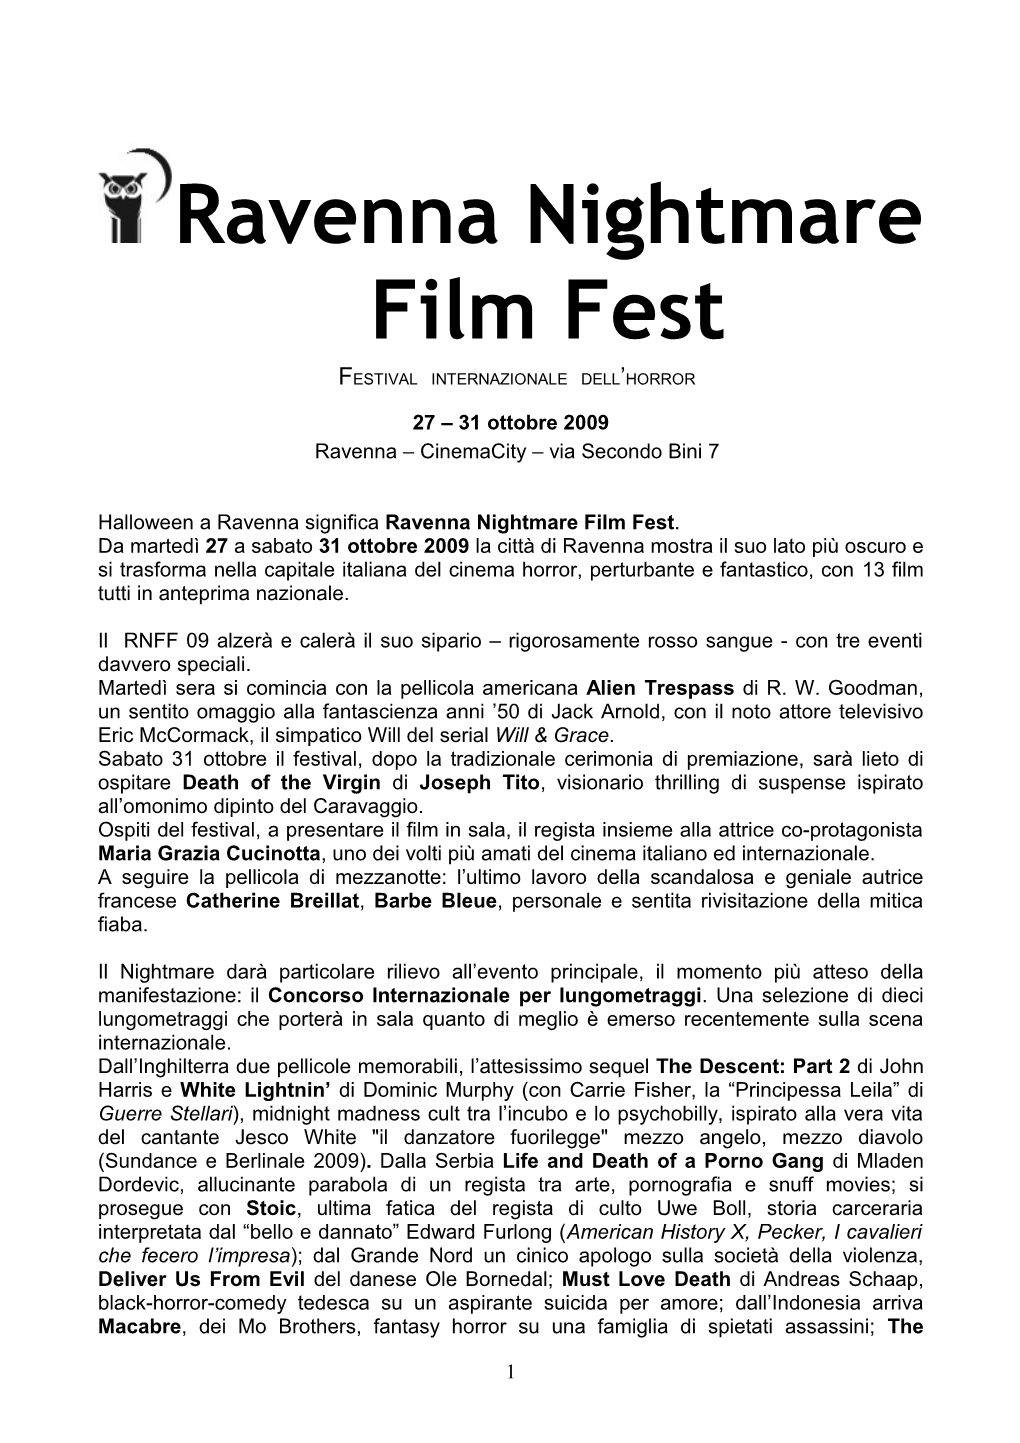 Ravenna Nightmare Film Fest FESTIVAL INTERNAZIONALE DELL’HORROR